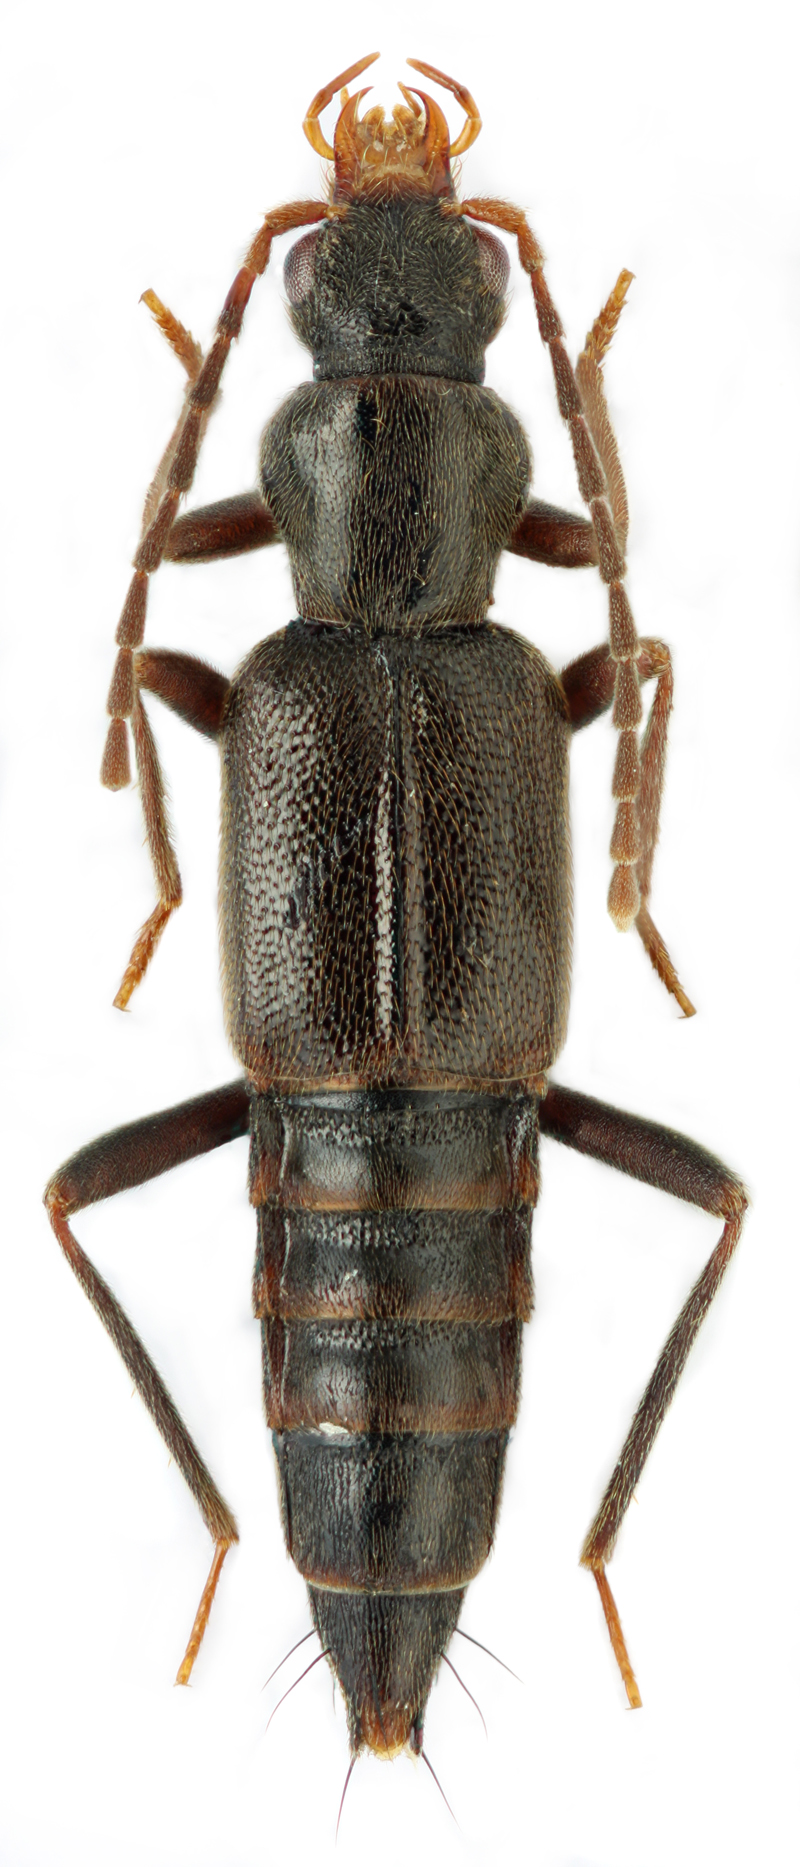 Derops coreanus (Y. Watanabe, 1969)